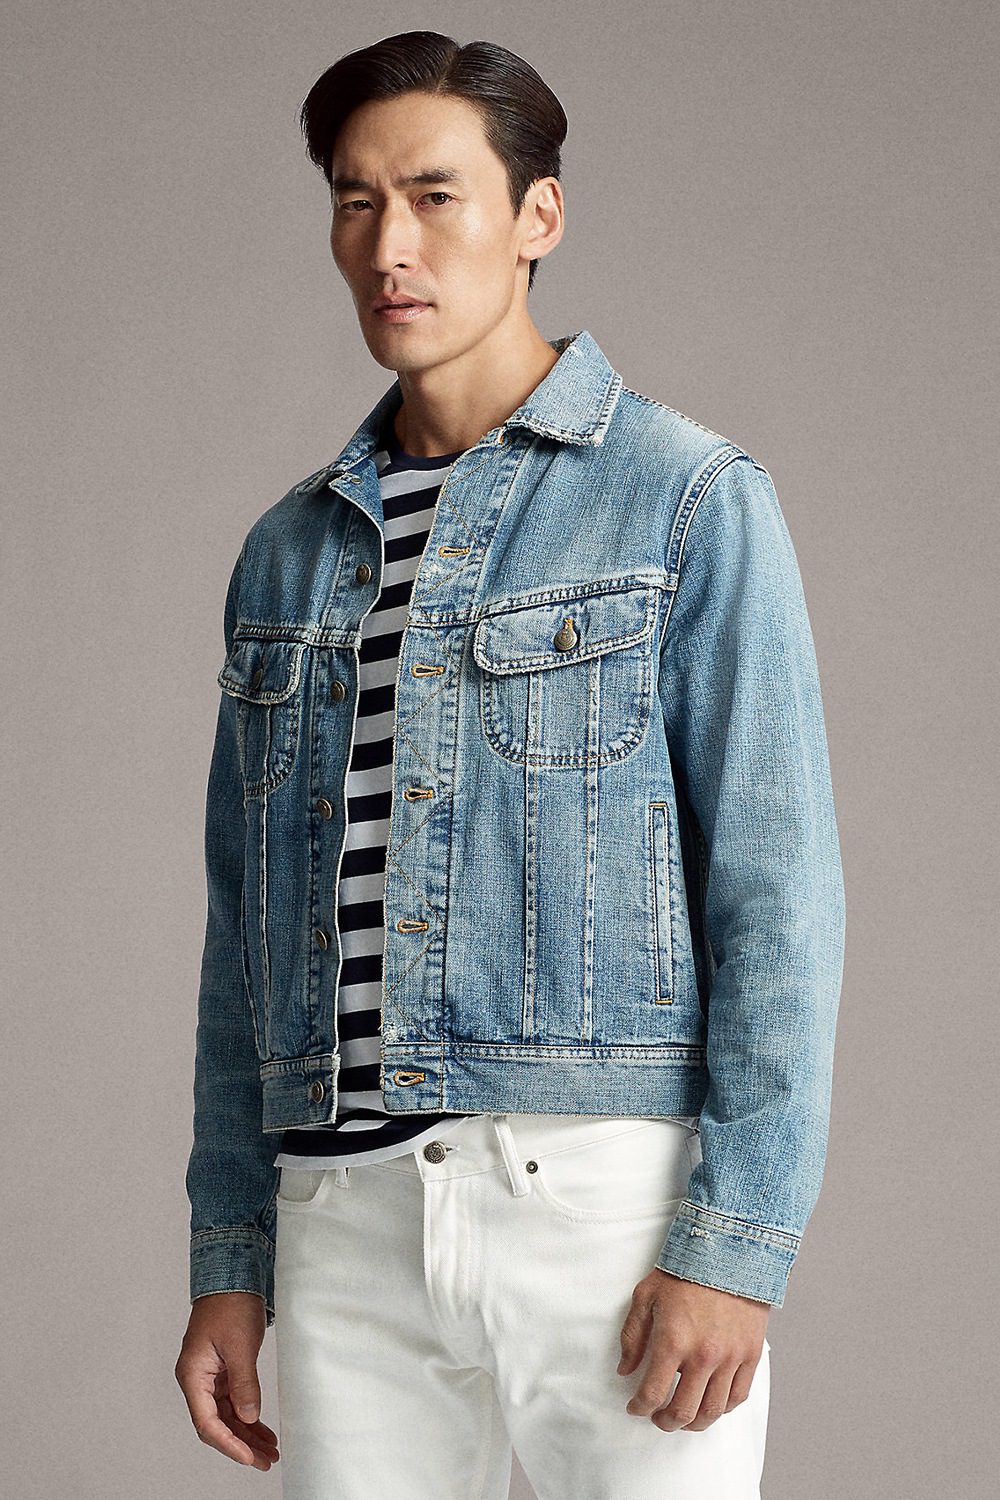 Ultimate Hooded Men's Denim Jacket for 2023 Fashion – Jeans4you.shop